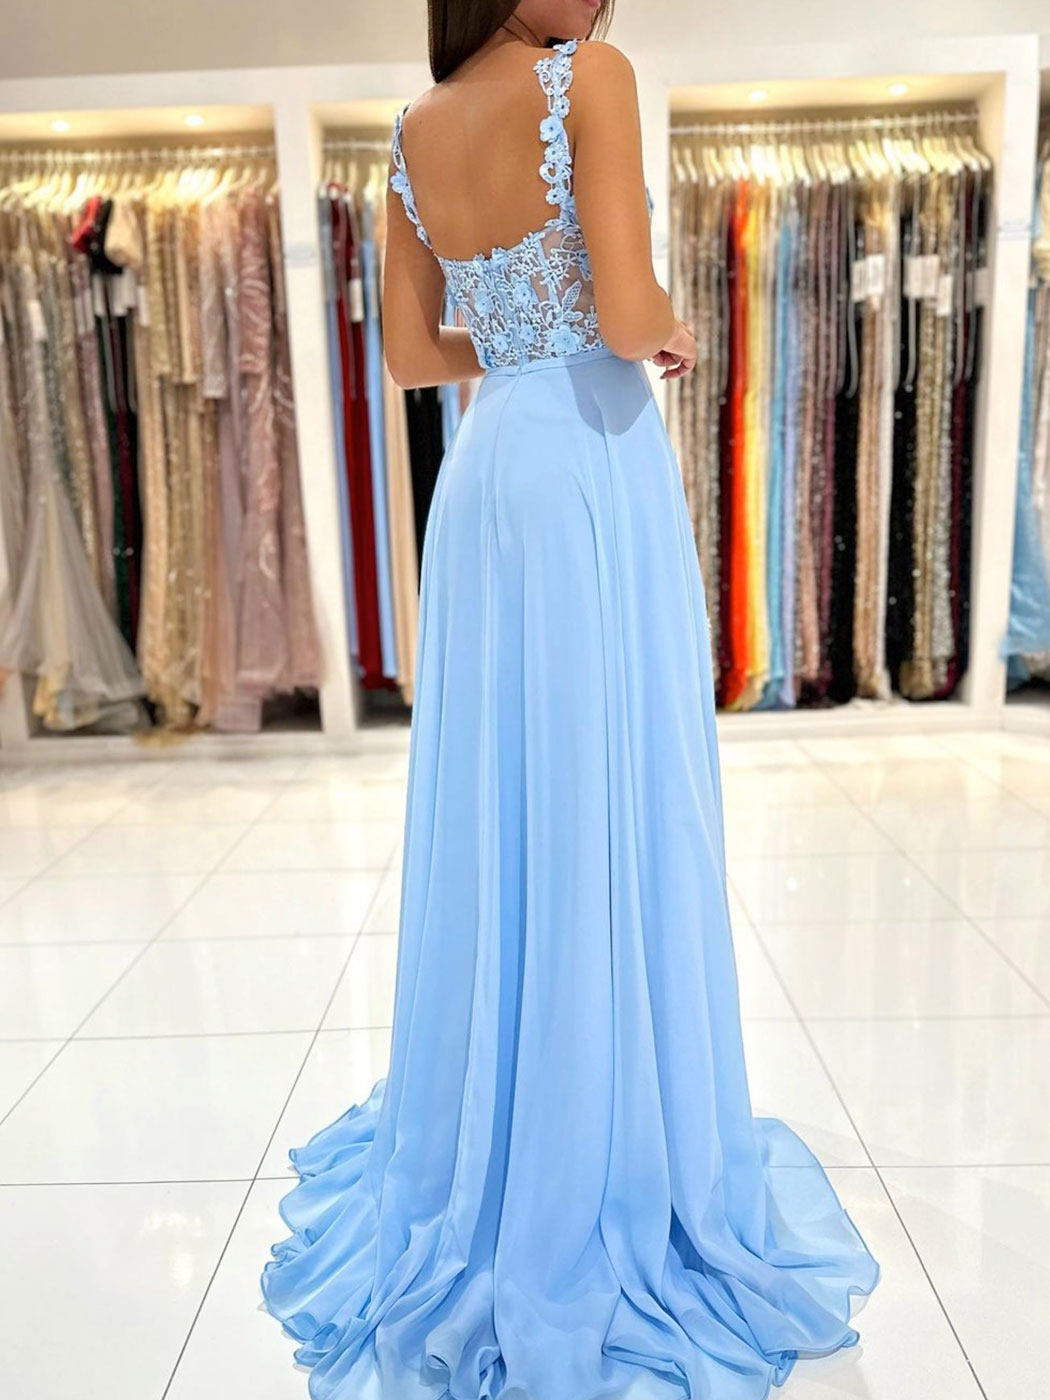 Blue A-Line Chiffon Lace Long Prom Dress, Blue Chiffon Long Formal Dress